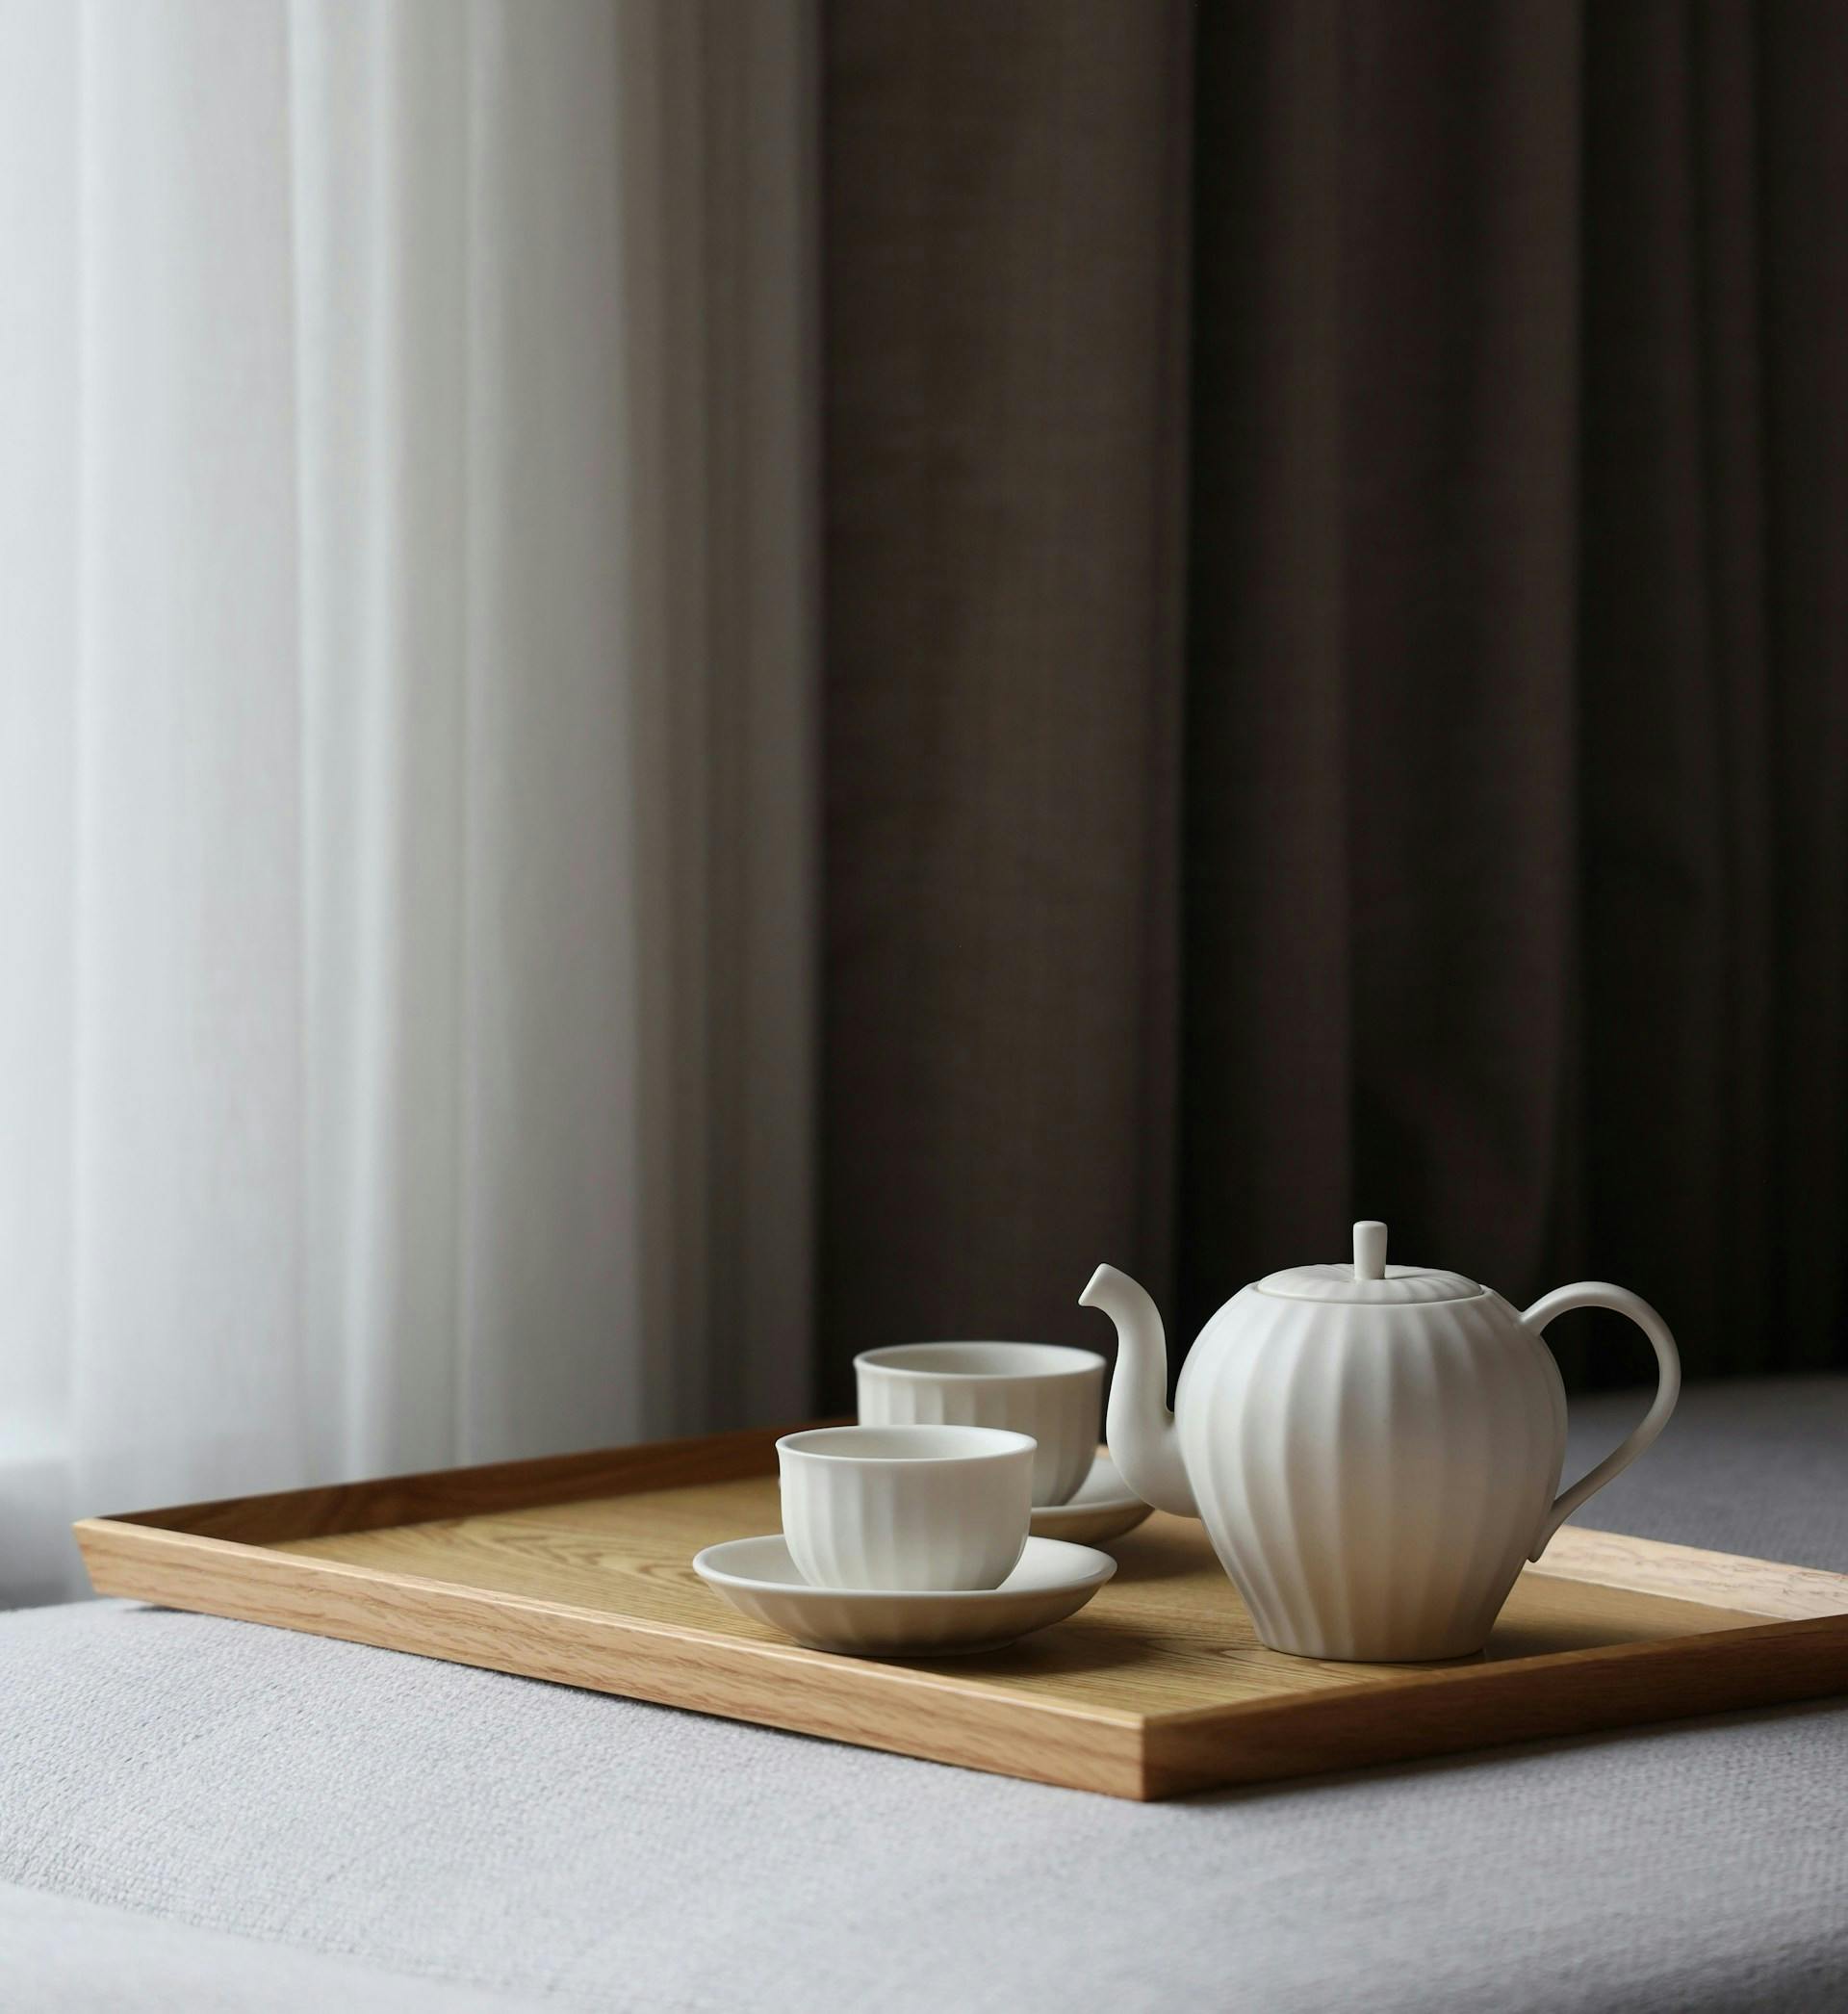 Teekanne und Tassen stehen auf einem Holztablet